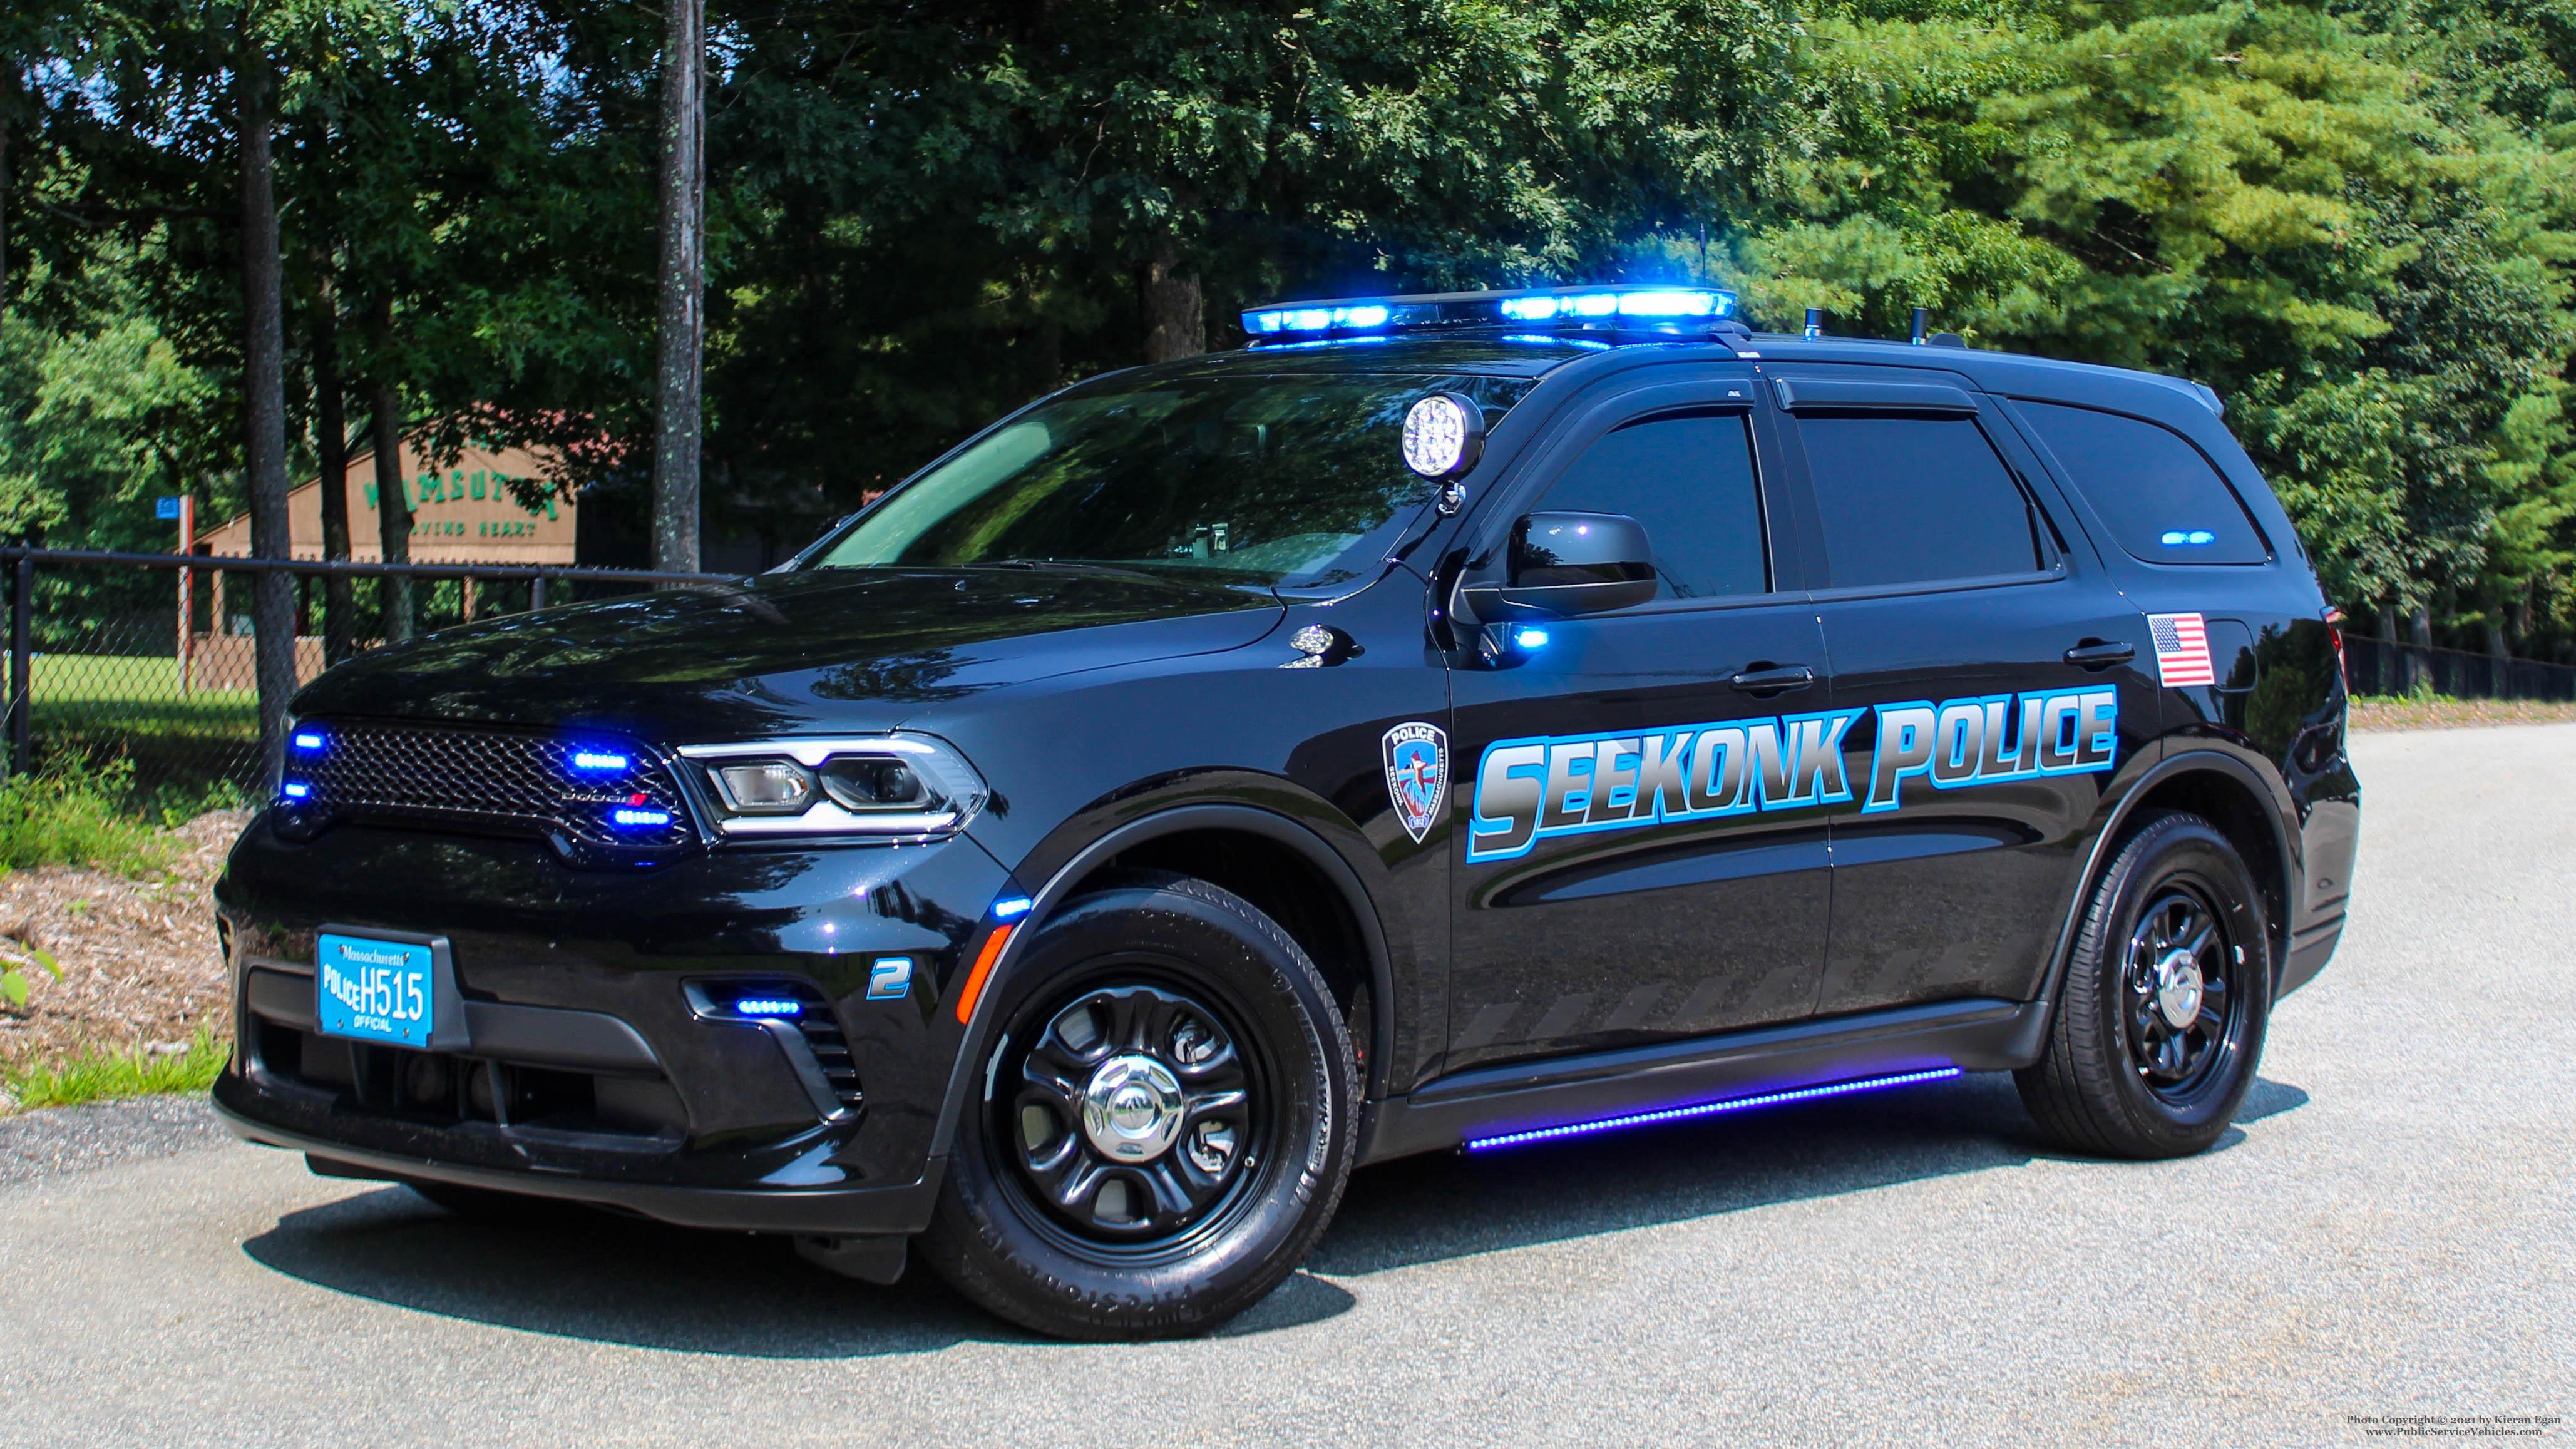 A photo  of Seekonk Police
            Car 2, a 2021 Dodge Durango             taken by Kieran Egan